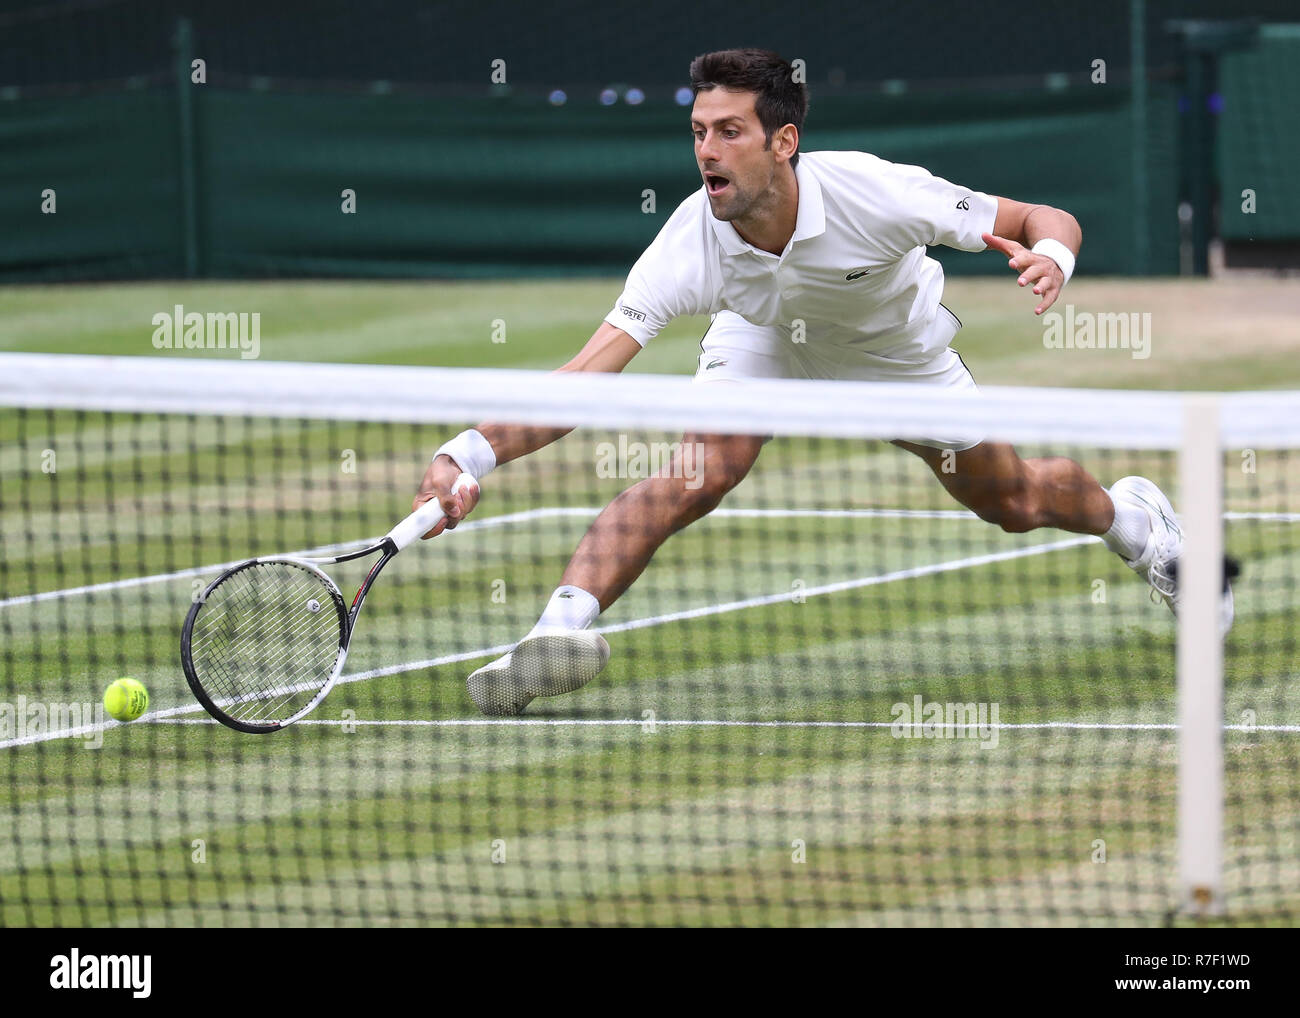 Lettore serbo Novak Djokovic in azione a Wimbledon, Londra, Gran Bretagna, Regno Unito. Foto Stock